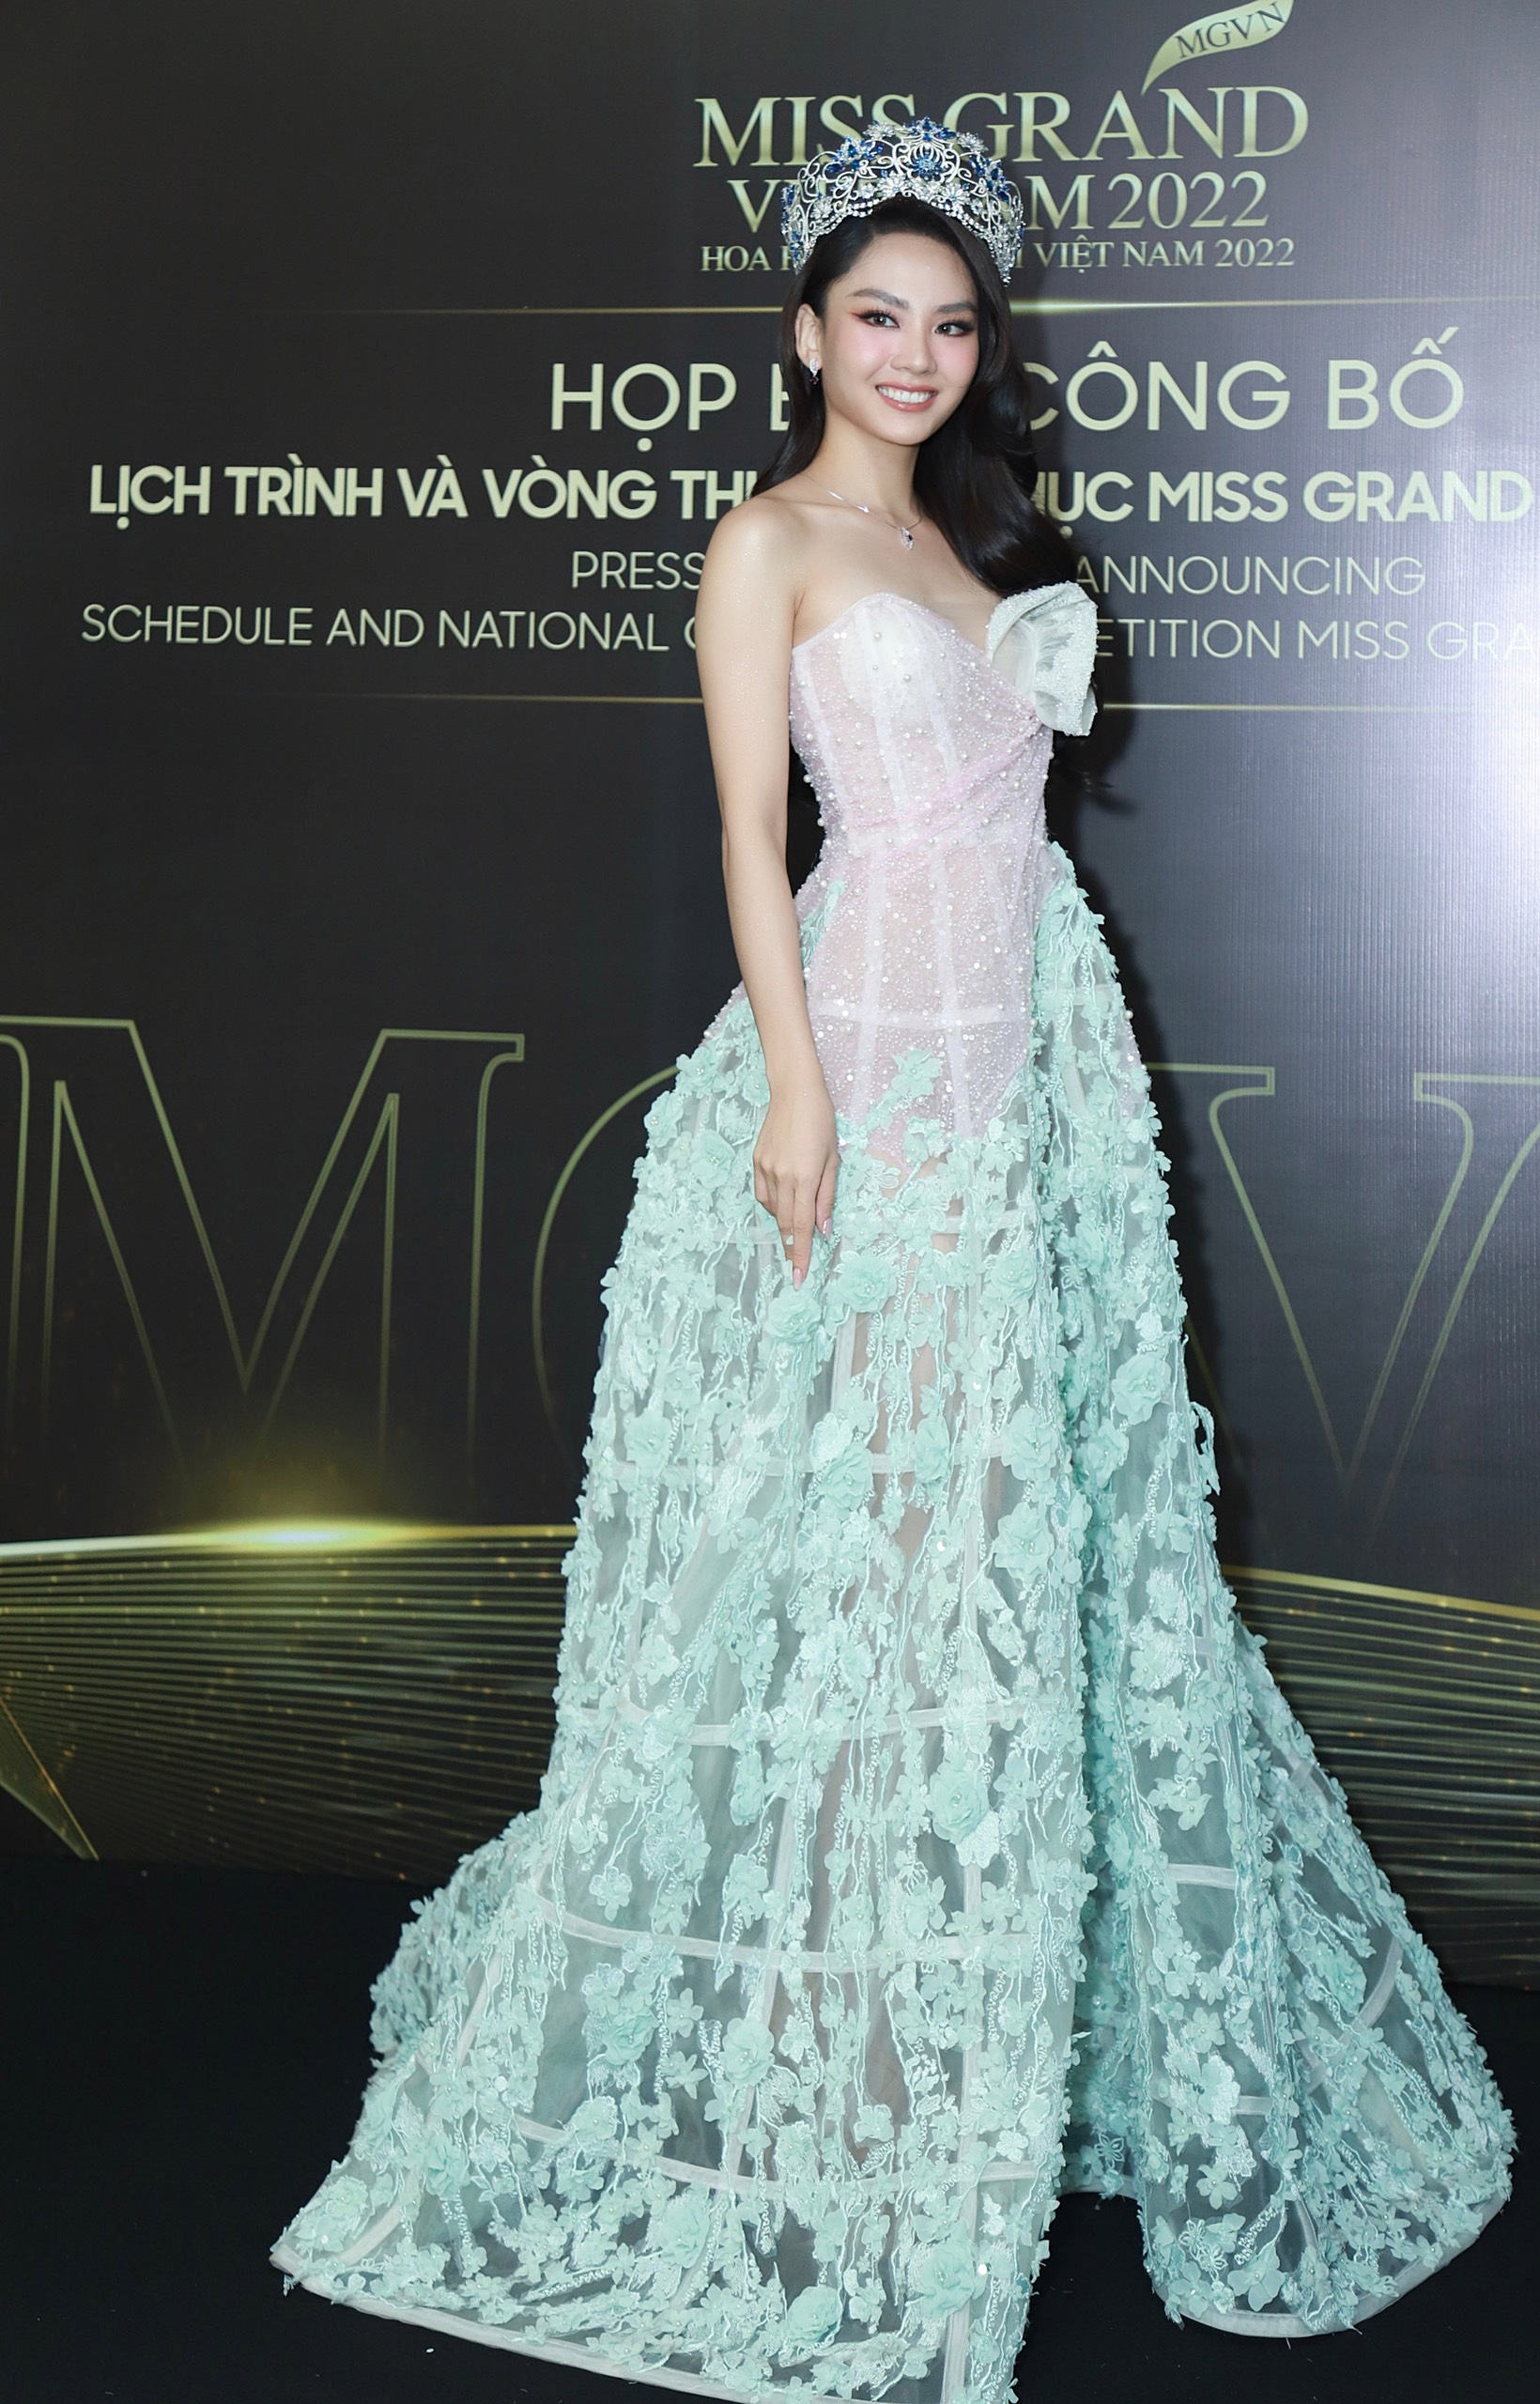 Top 3 Miss World Vietnam 2022 đọ sắc bên Hoa hậu Thùy Tiên và dàn mỹ nhân đình đám Vbiz - Ảnh 3.